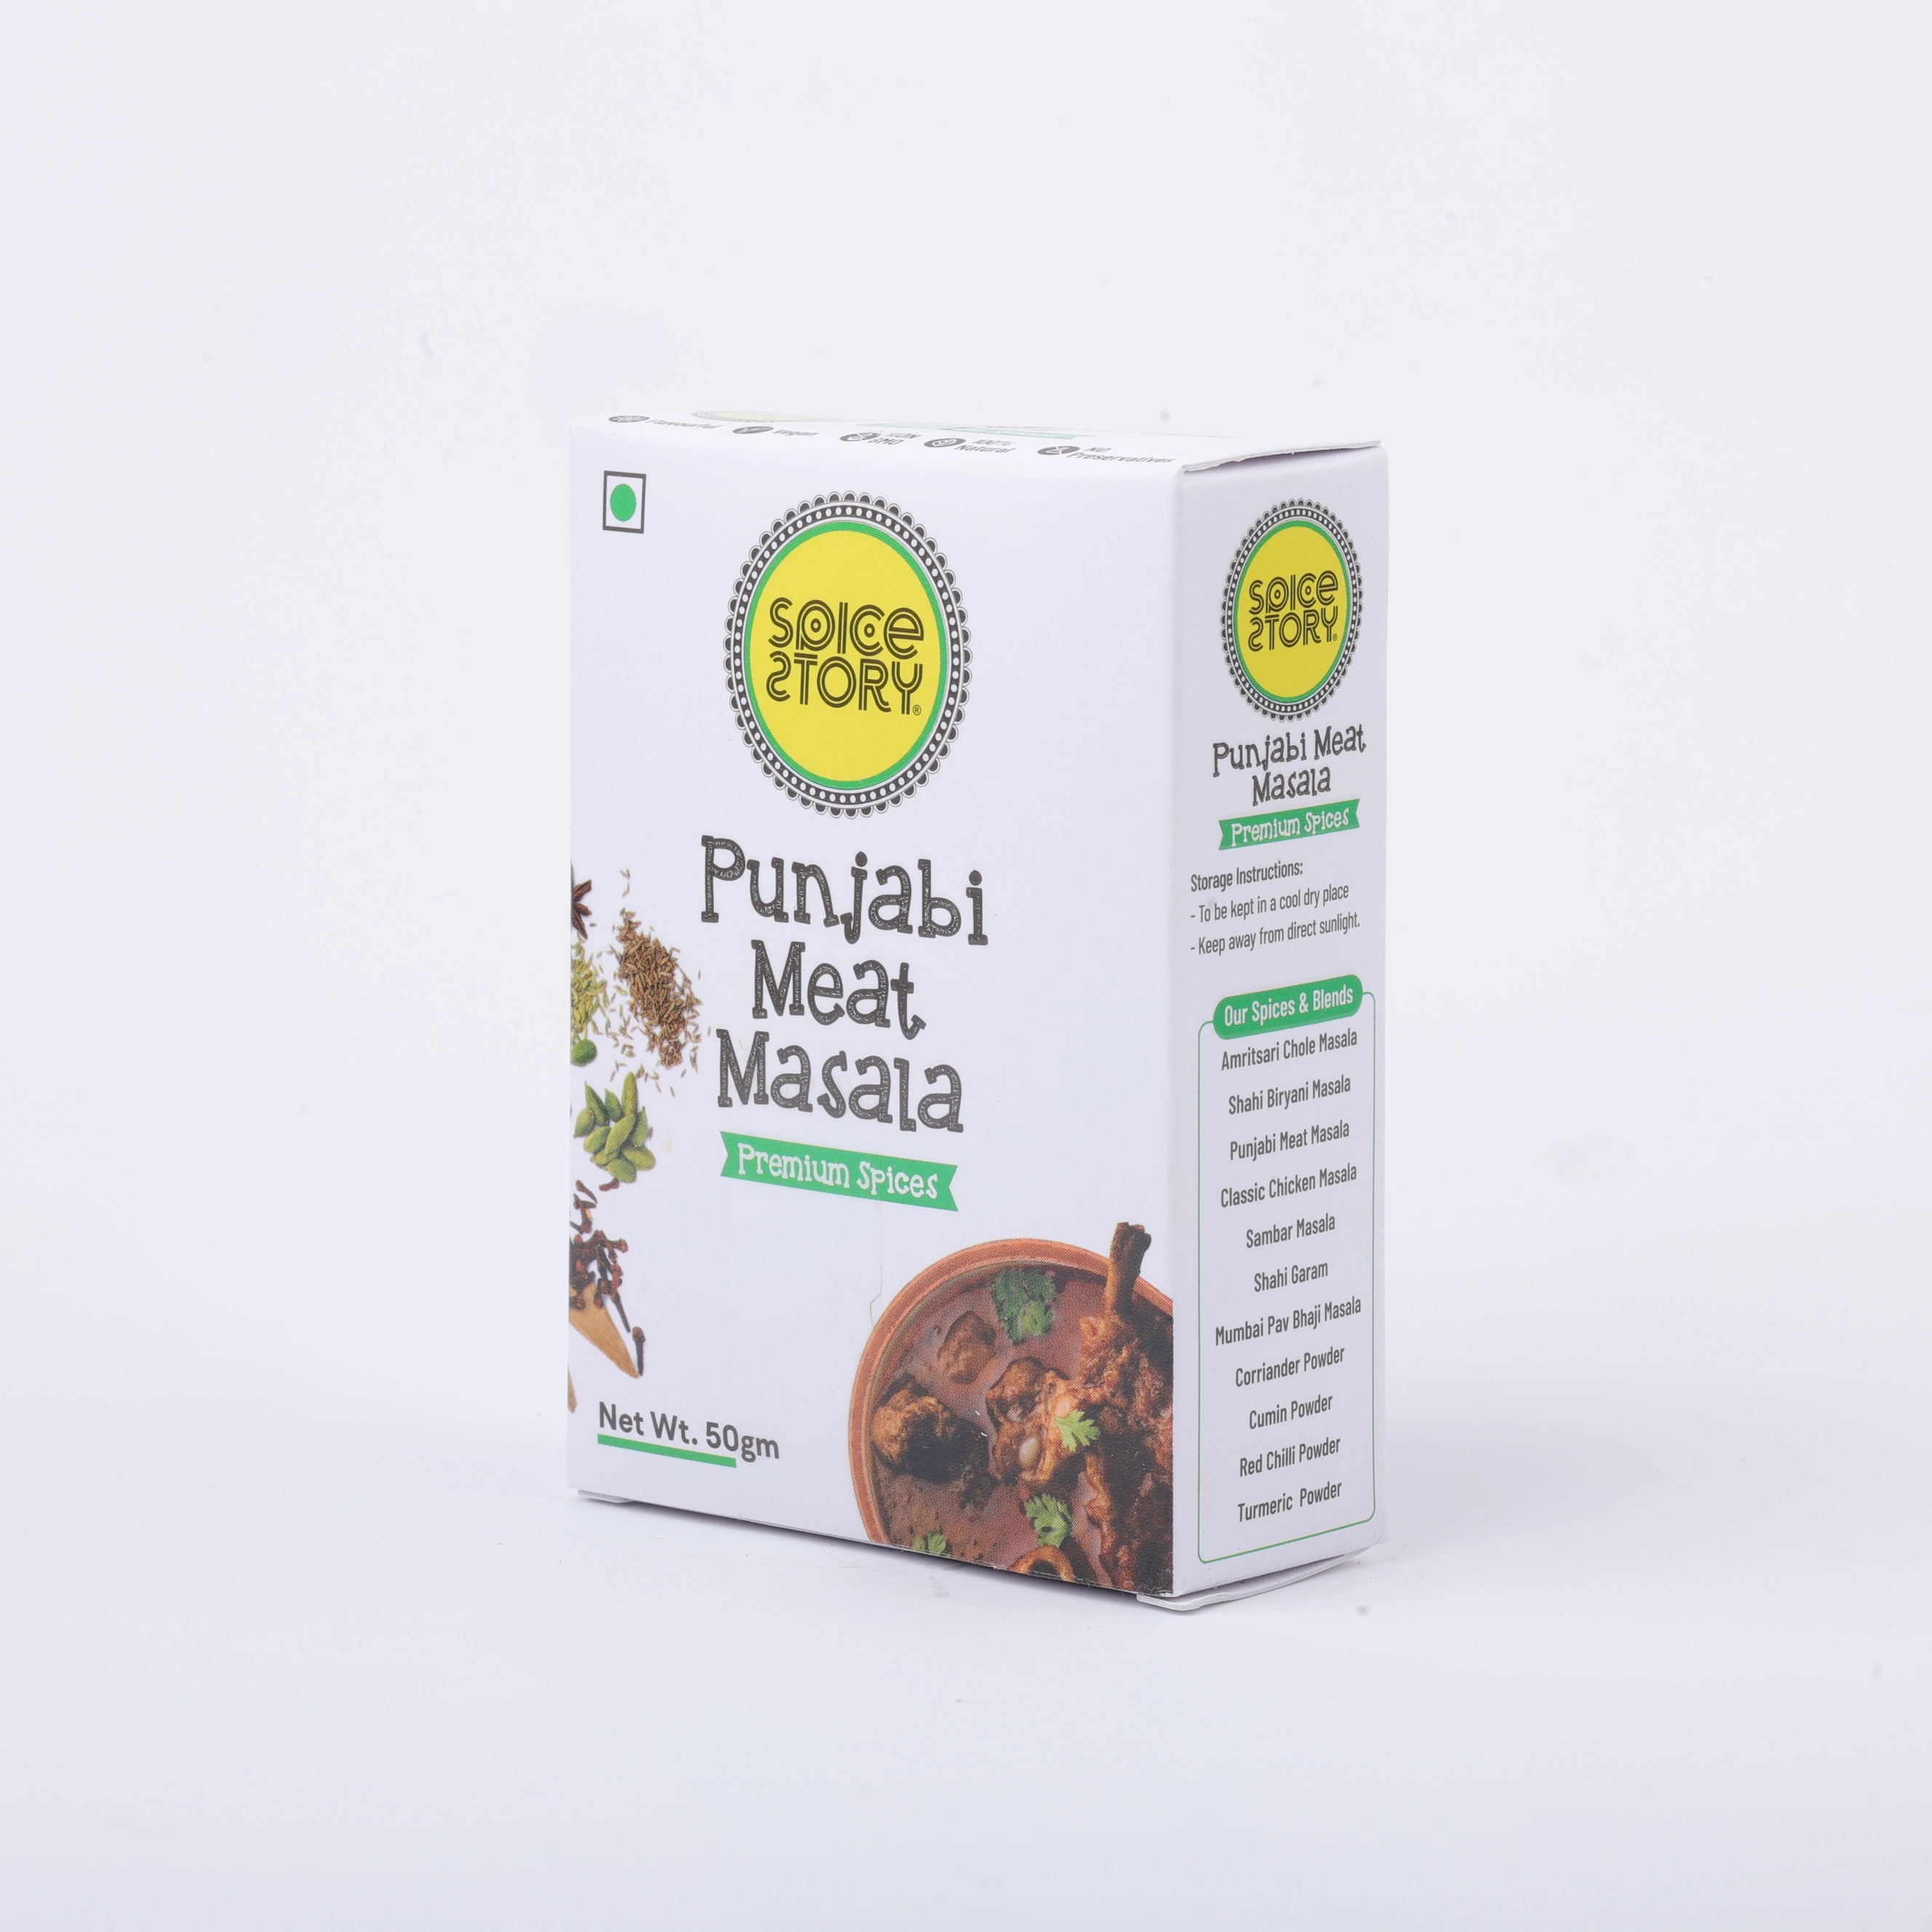 Spice Story Punjabi Meat Masala-2